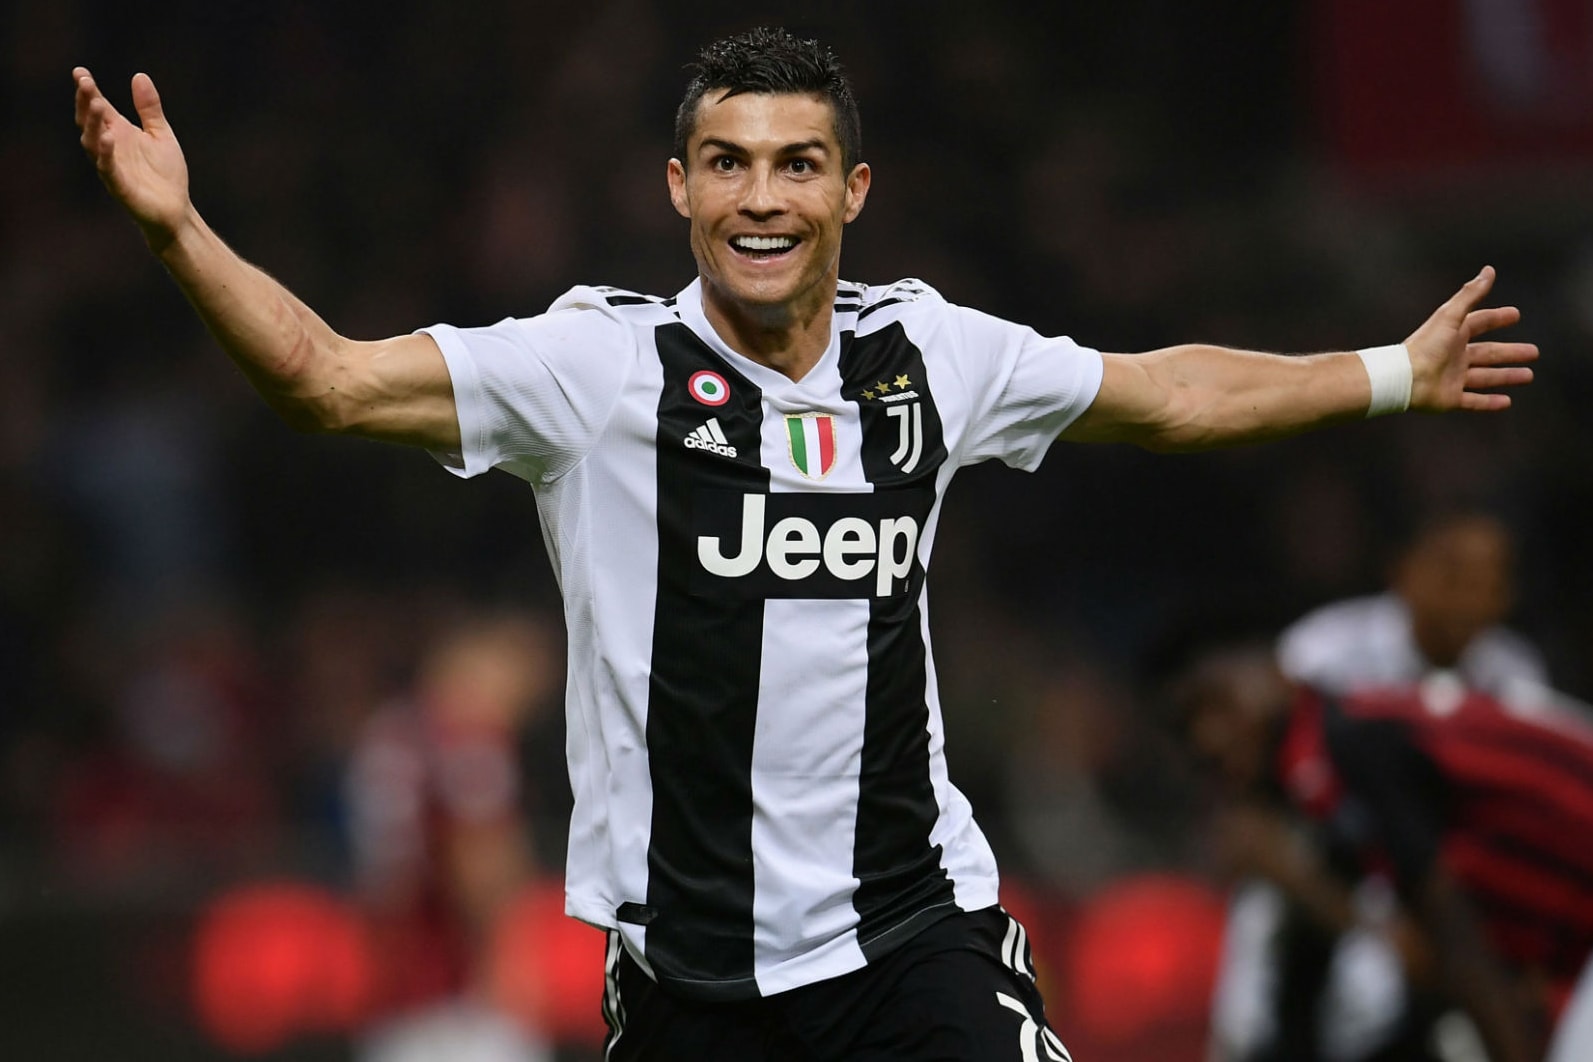 adidas 豪擲 4.08 億歐元與 Juventus 續約至 2027 年